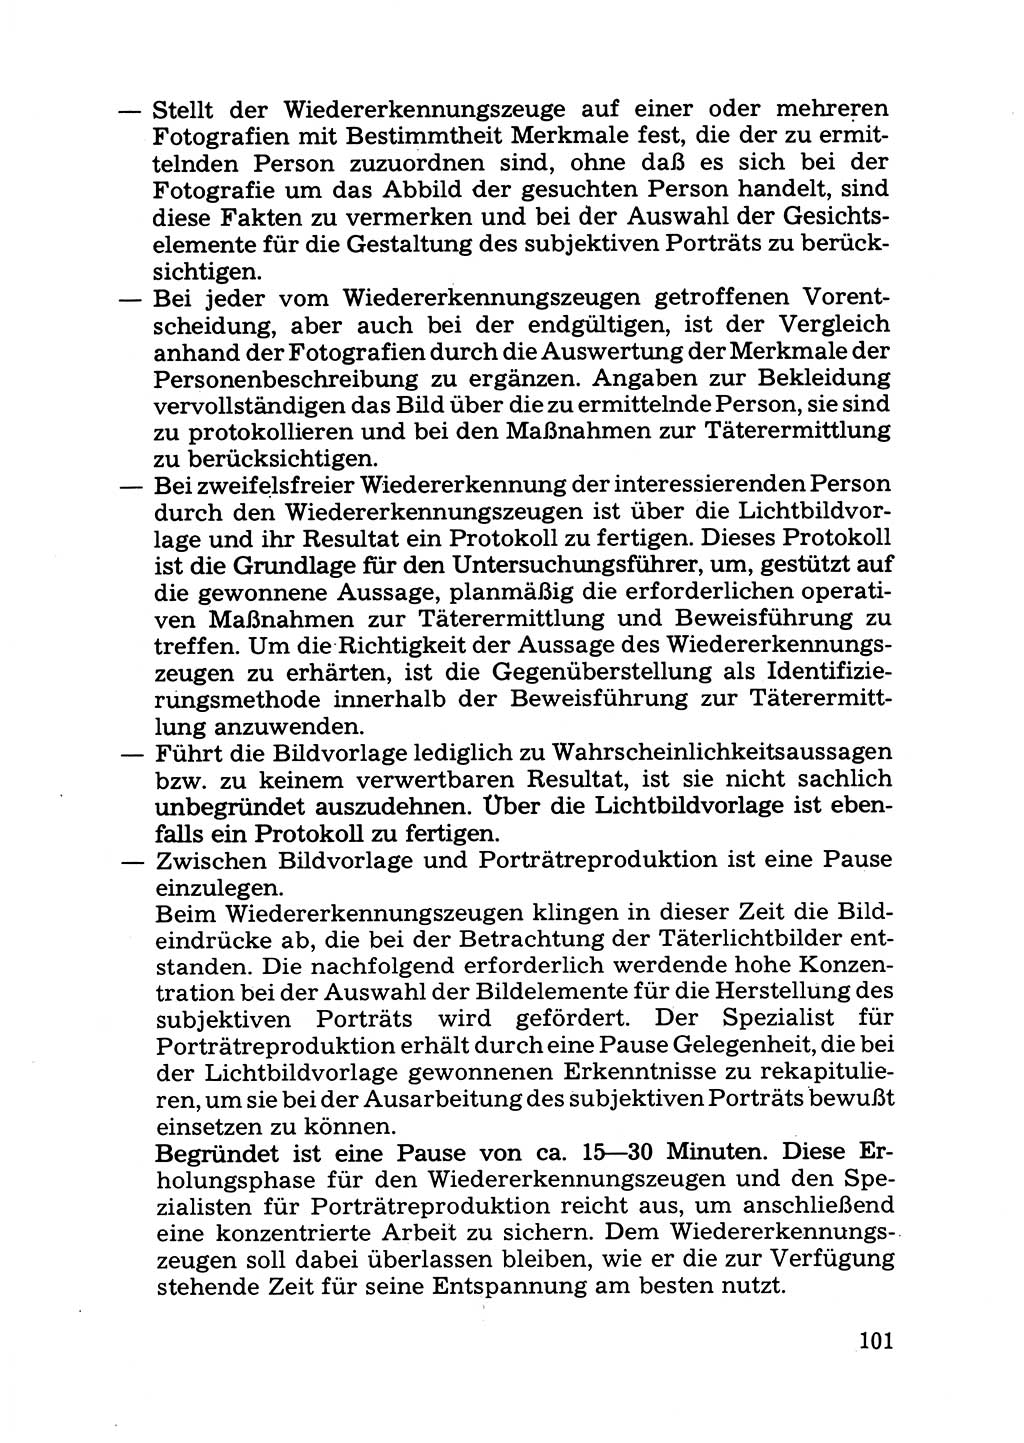 Das subjektive Porträt [Deutsche Demokratische Republik (DDR)] 1981, Seite 101 (Subj. Port. DDR 1981, S. 101)